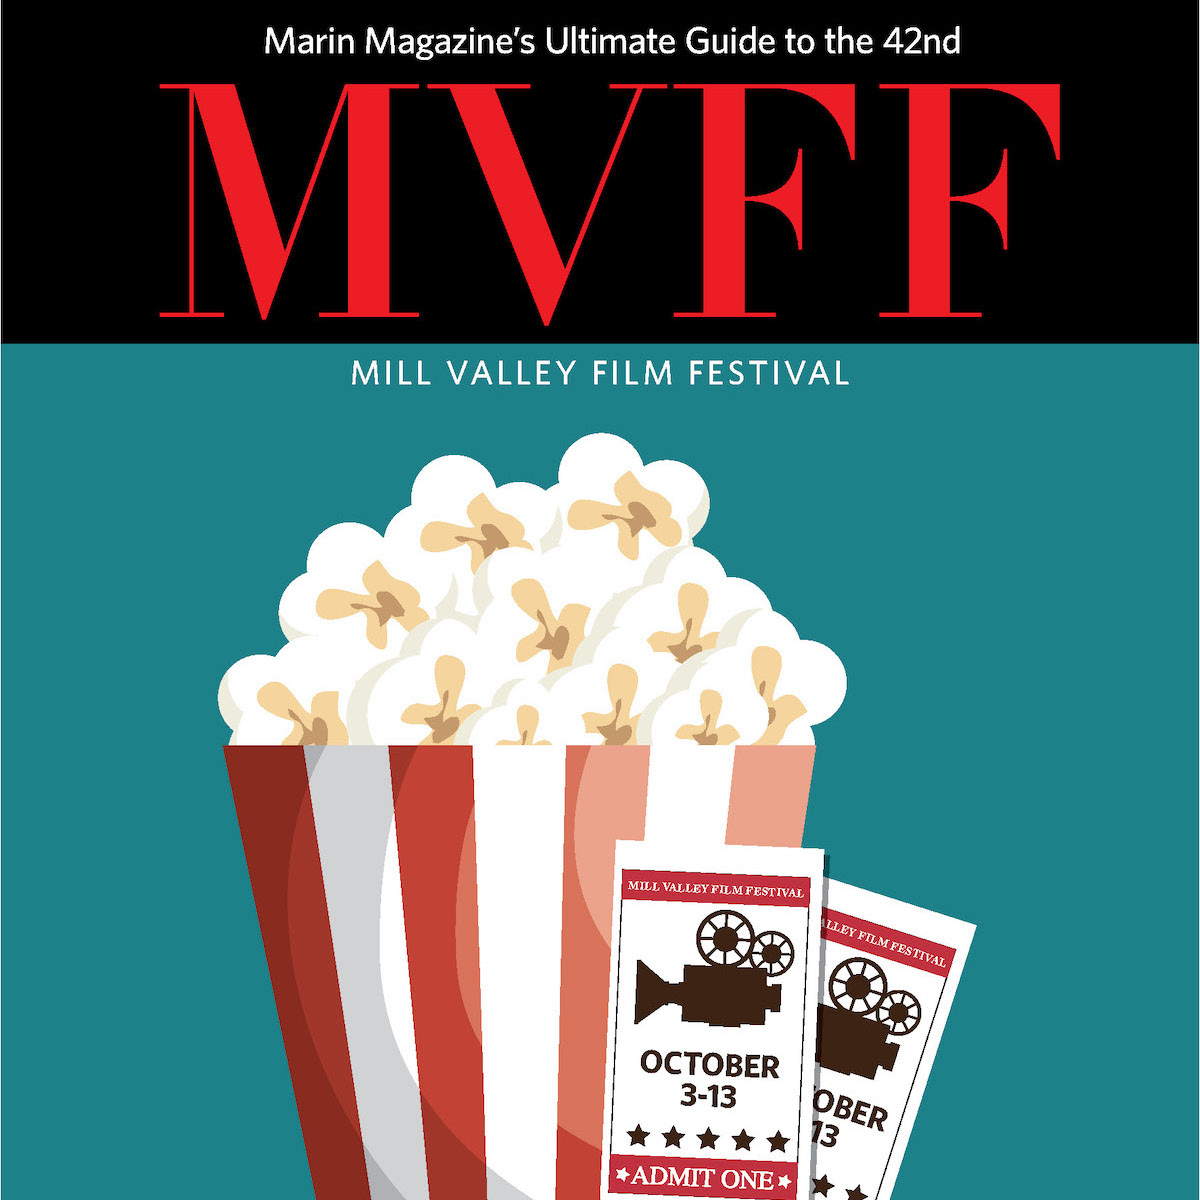 Mill Valley Film Festival 2019